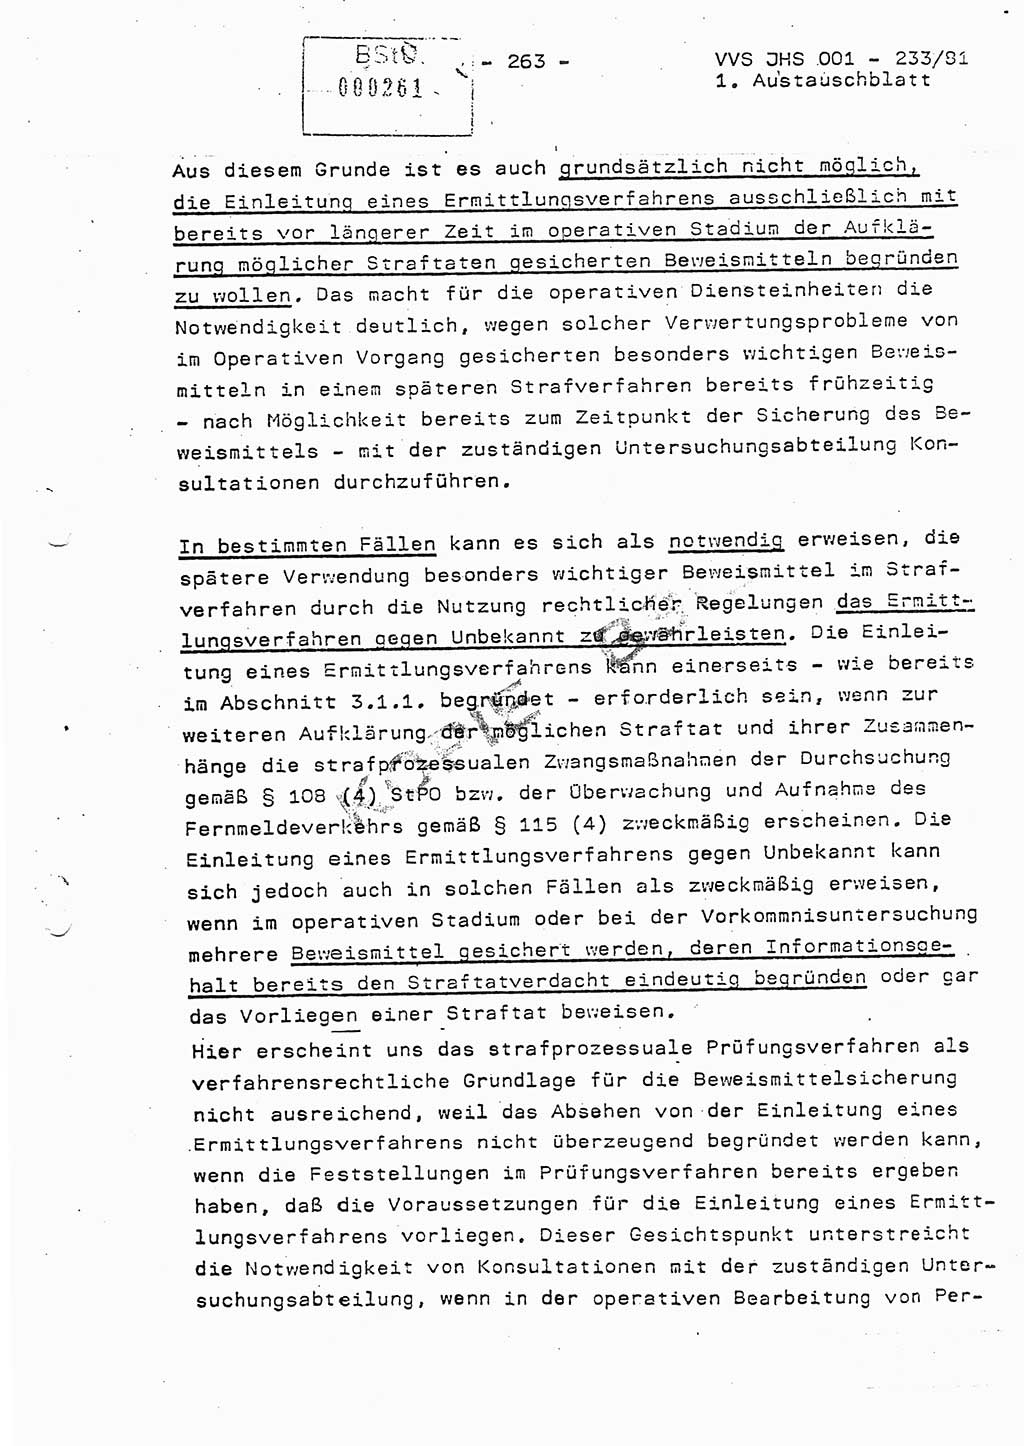 Dissertation Oberstleutnant Horst Zank (JHS), Oberstleutnant Dr. Karl-Heinz Knoblauch (JHS), Oberstleutnant Gustav-Adolf Kowalewski (HA Ⅸ), Oberstleutnant Wolfgang Plötner (HA Ⅸ), Ministerium für Staatssicherheit (MfS) [Deutsche Demokratische Republik (DDR)], Juristische Hochschule (JHS), Vertrauliche Verschlußsache (VVS) o001-233/81, Potsdam 1981, Blatt 263 (Diss. MfS DDR JHS VVS o001-233/81 1981, Bl. 263)